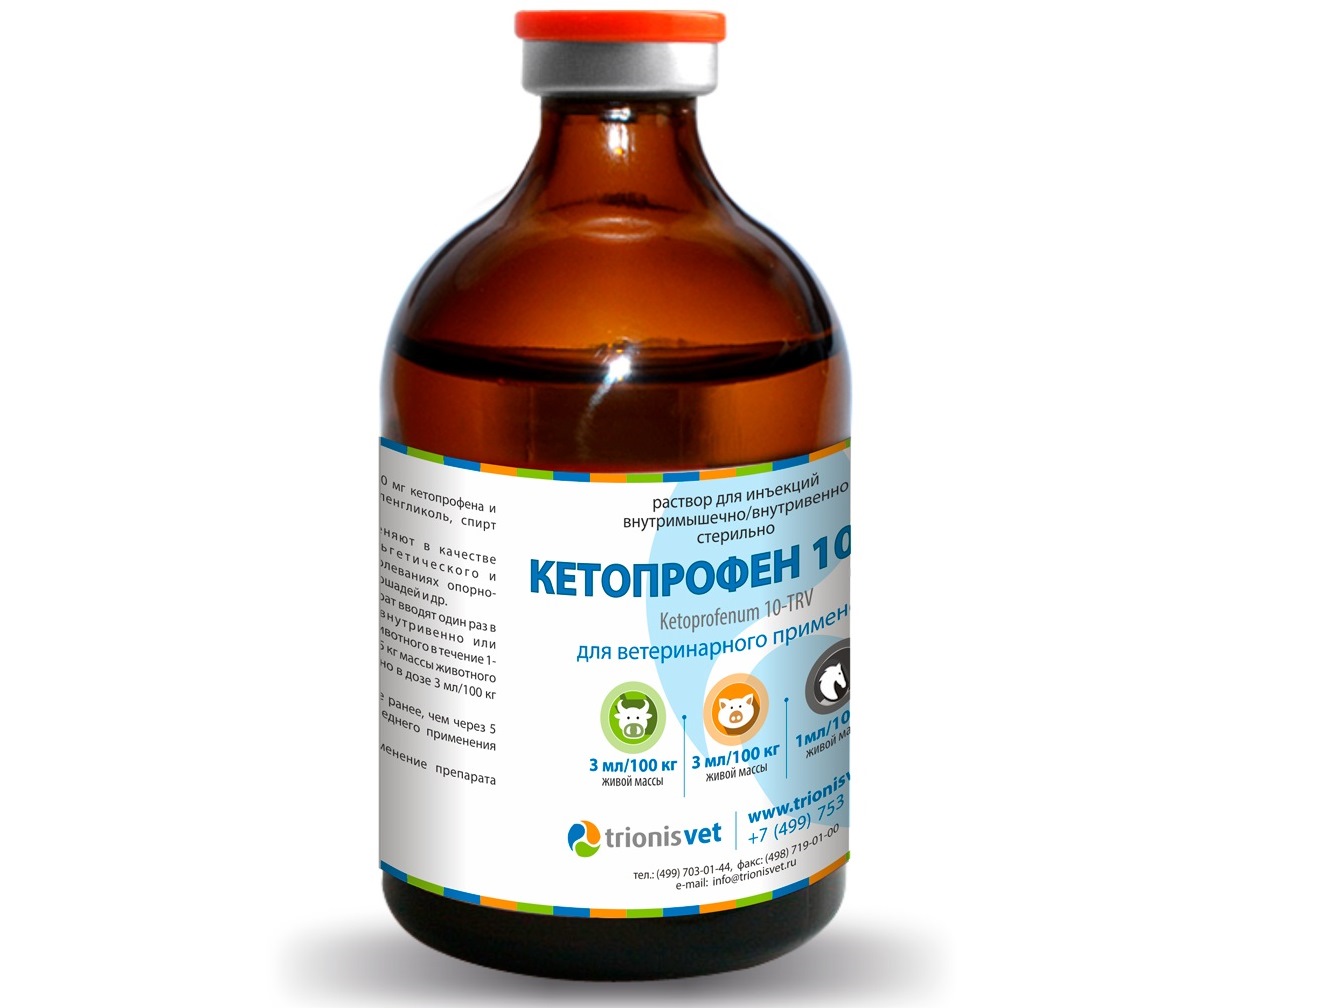 Кетопрофен 10-ТРВ